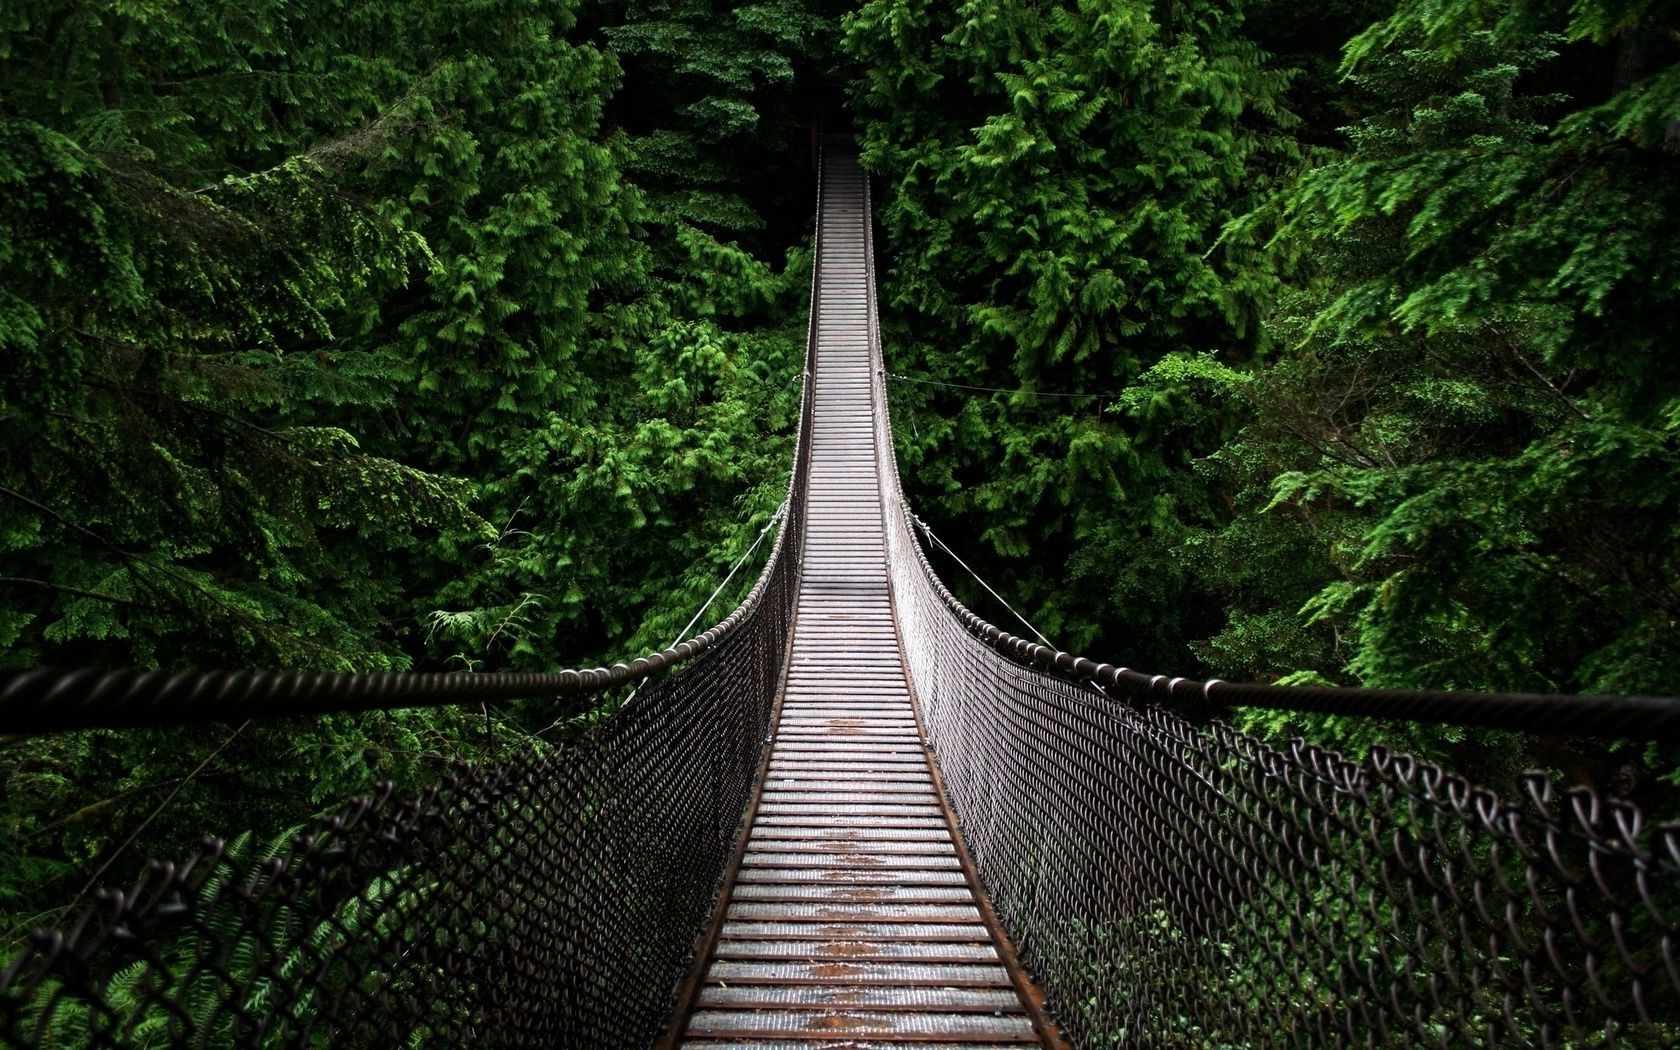 пейзажи древесины мост дерево природа пейзаж путешествия парк лист руководство на открытом воздухе воды прогулка мостки след река